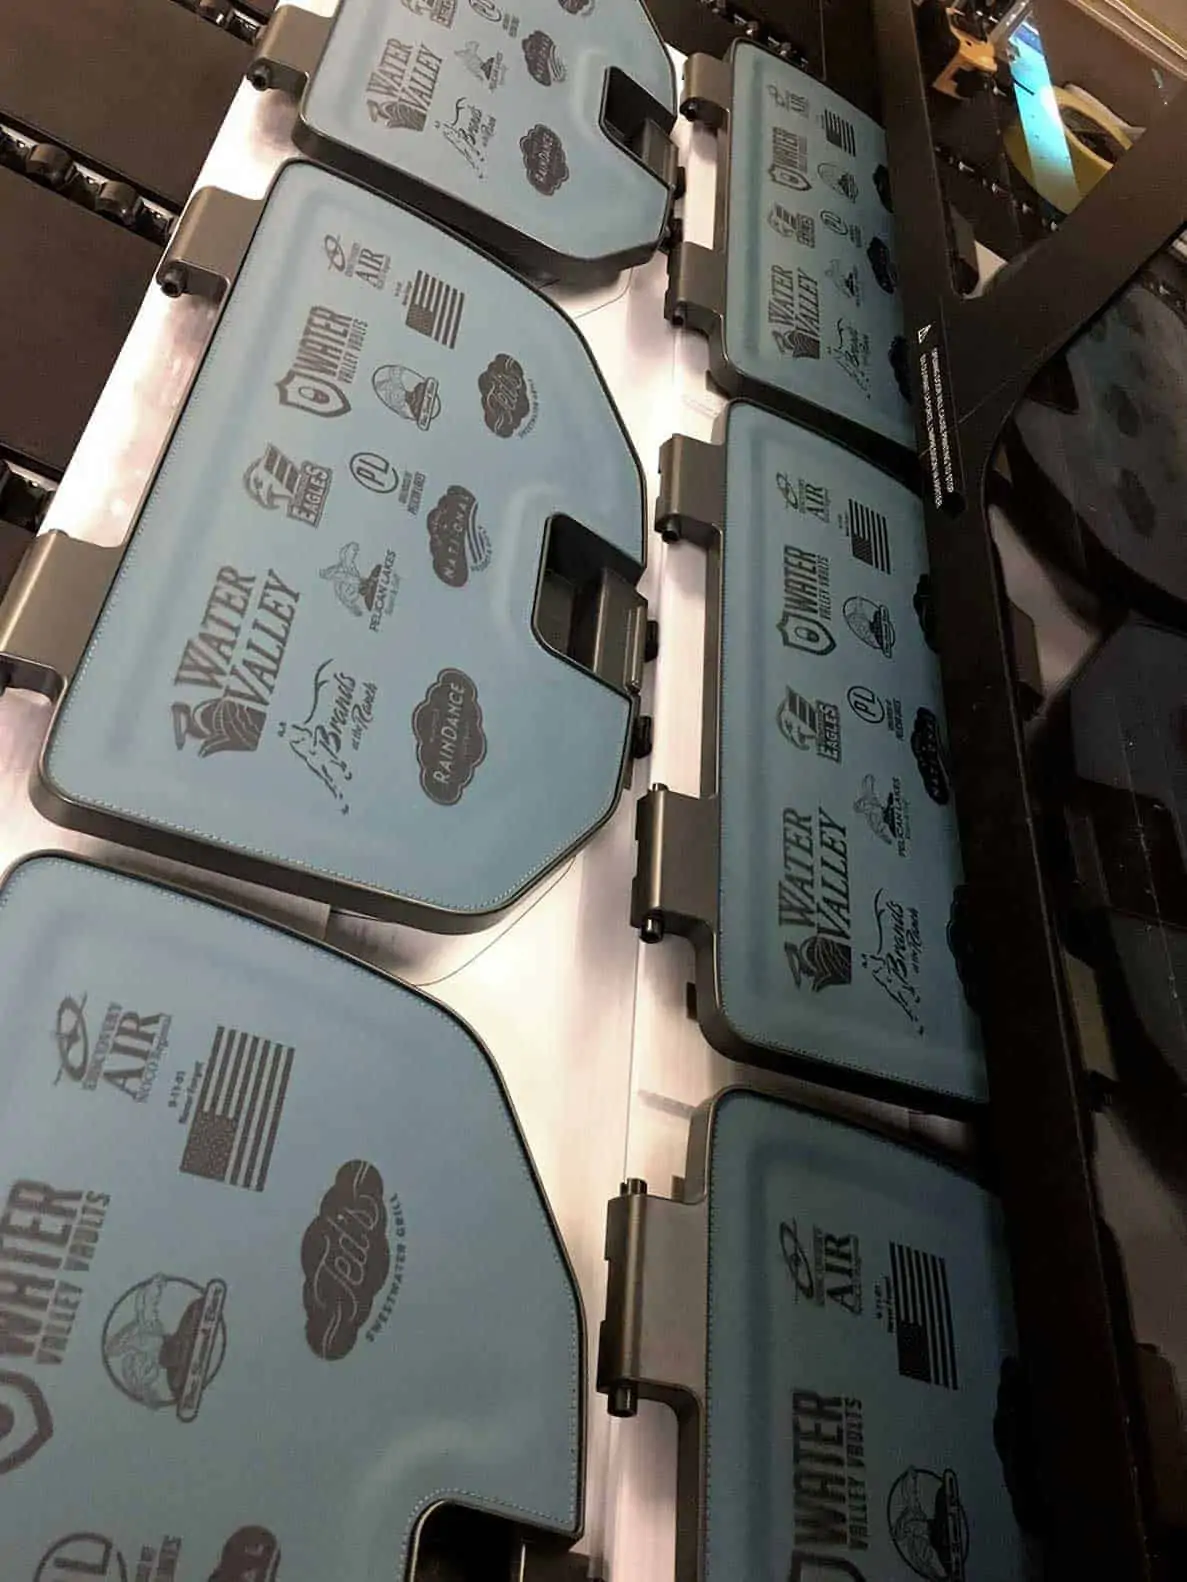 flatbed printed cooler lids